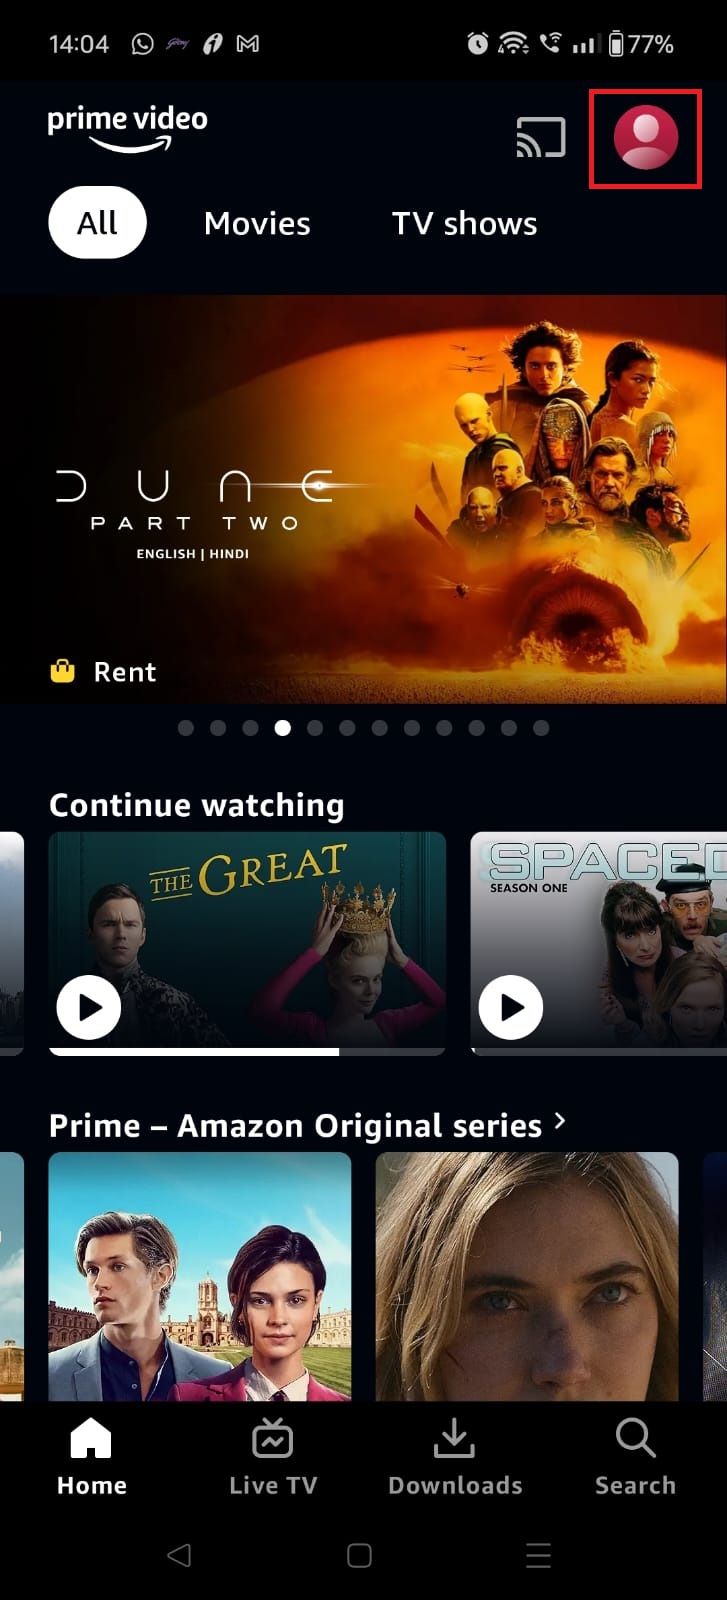 Captura de tela destacando o ícone do perfil no aplicativo móvel Amazon Prime Video